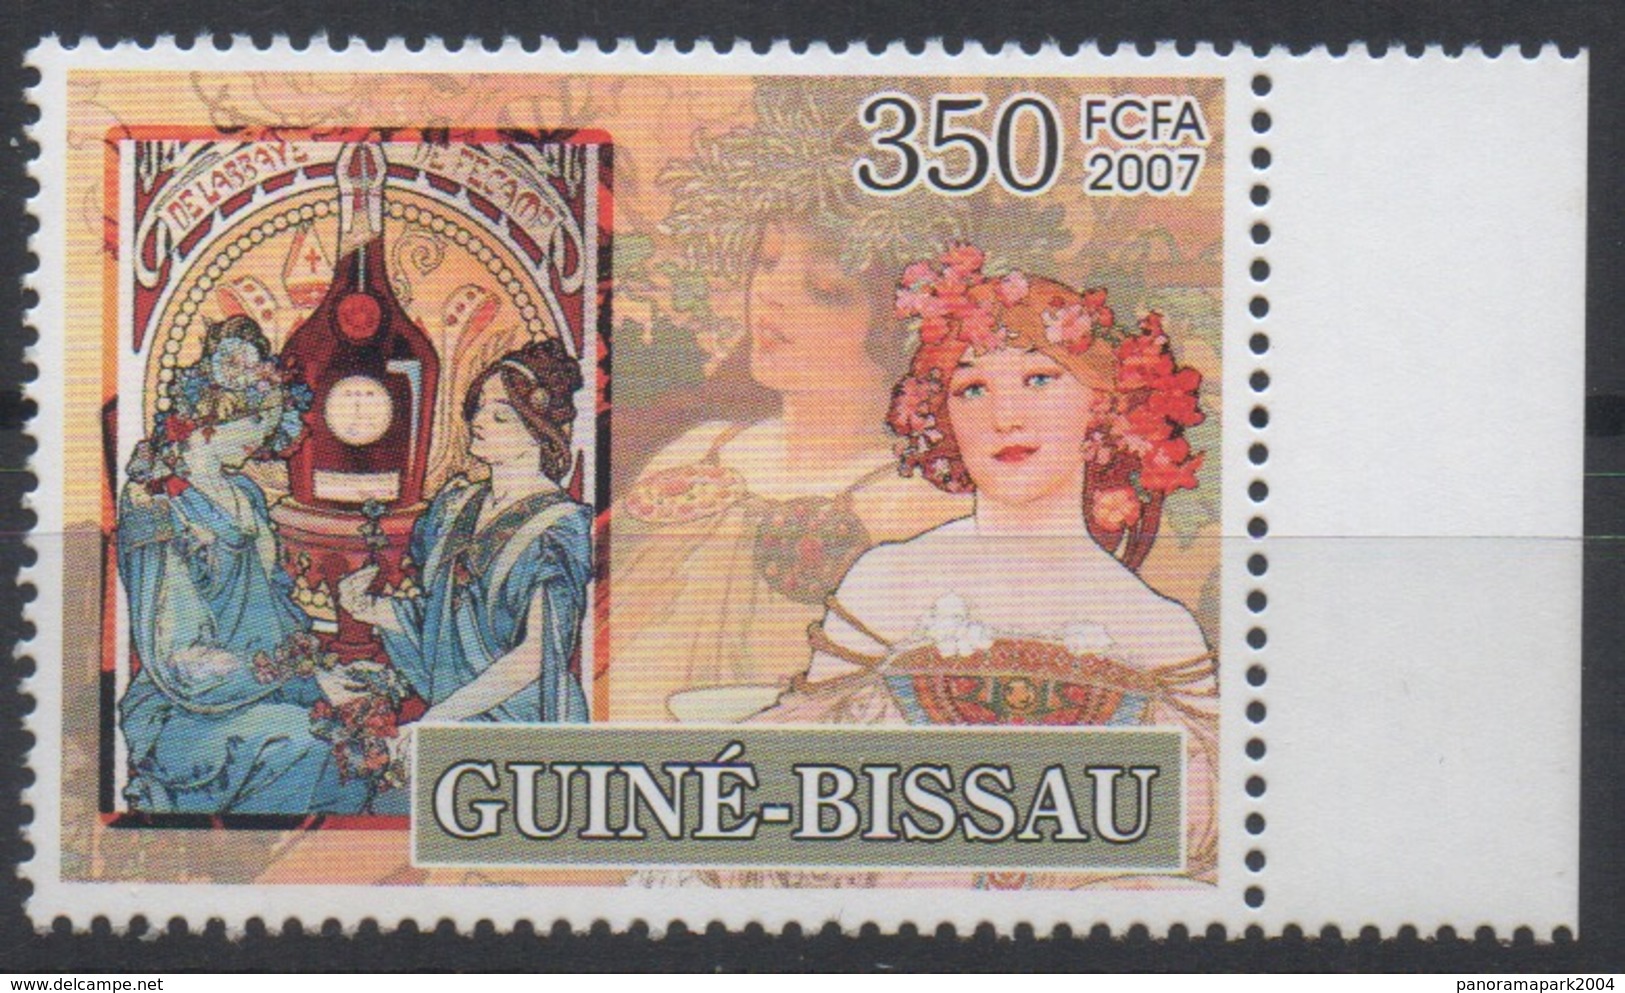 Guiné-Bissau Guinea Guinée Bissau 2007 Mi. 3536 Alfons Mucha Jugendstil Art Kunst Painting - Guinée-Bissau